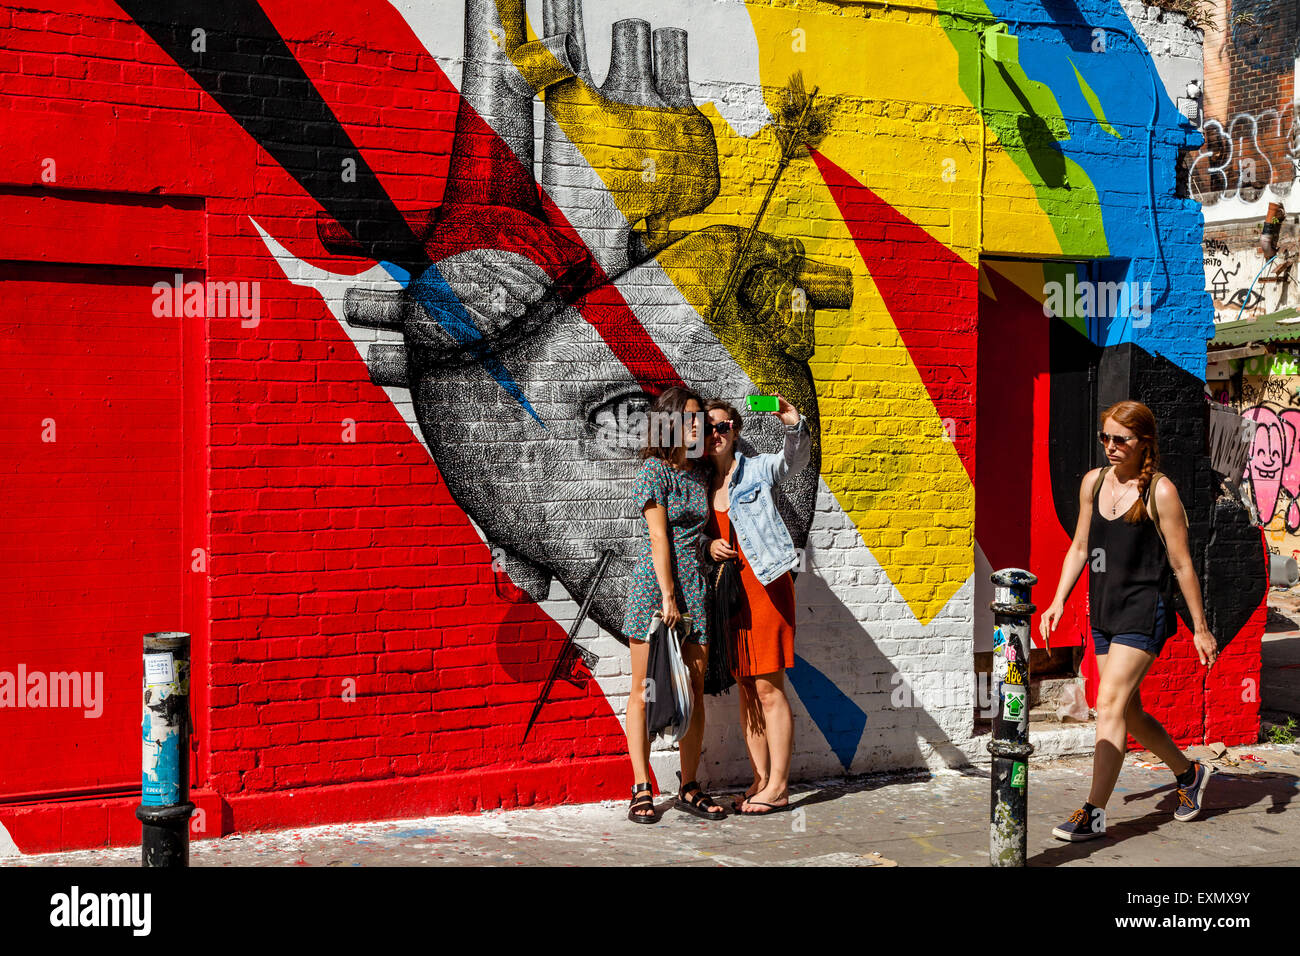 Giovani donne posano per una selfie di fronte a qualche Arte di strada/Graffiti, Brick Lane, Londra, Inghilterra Foto Stock